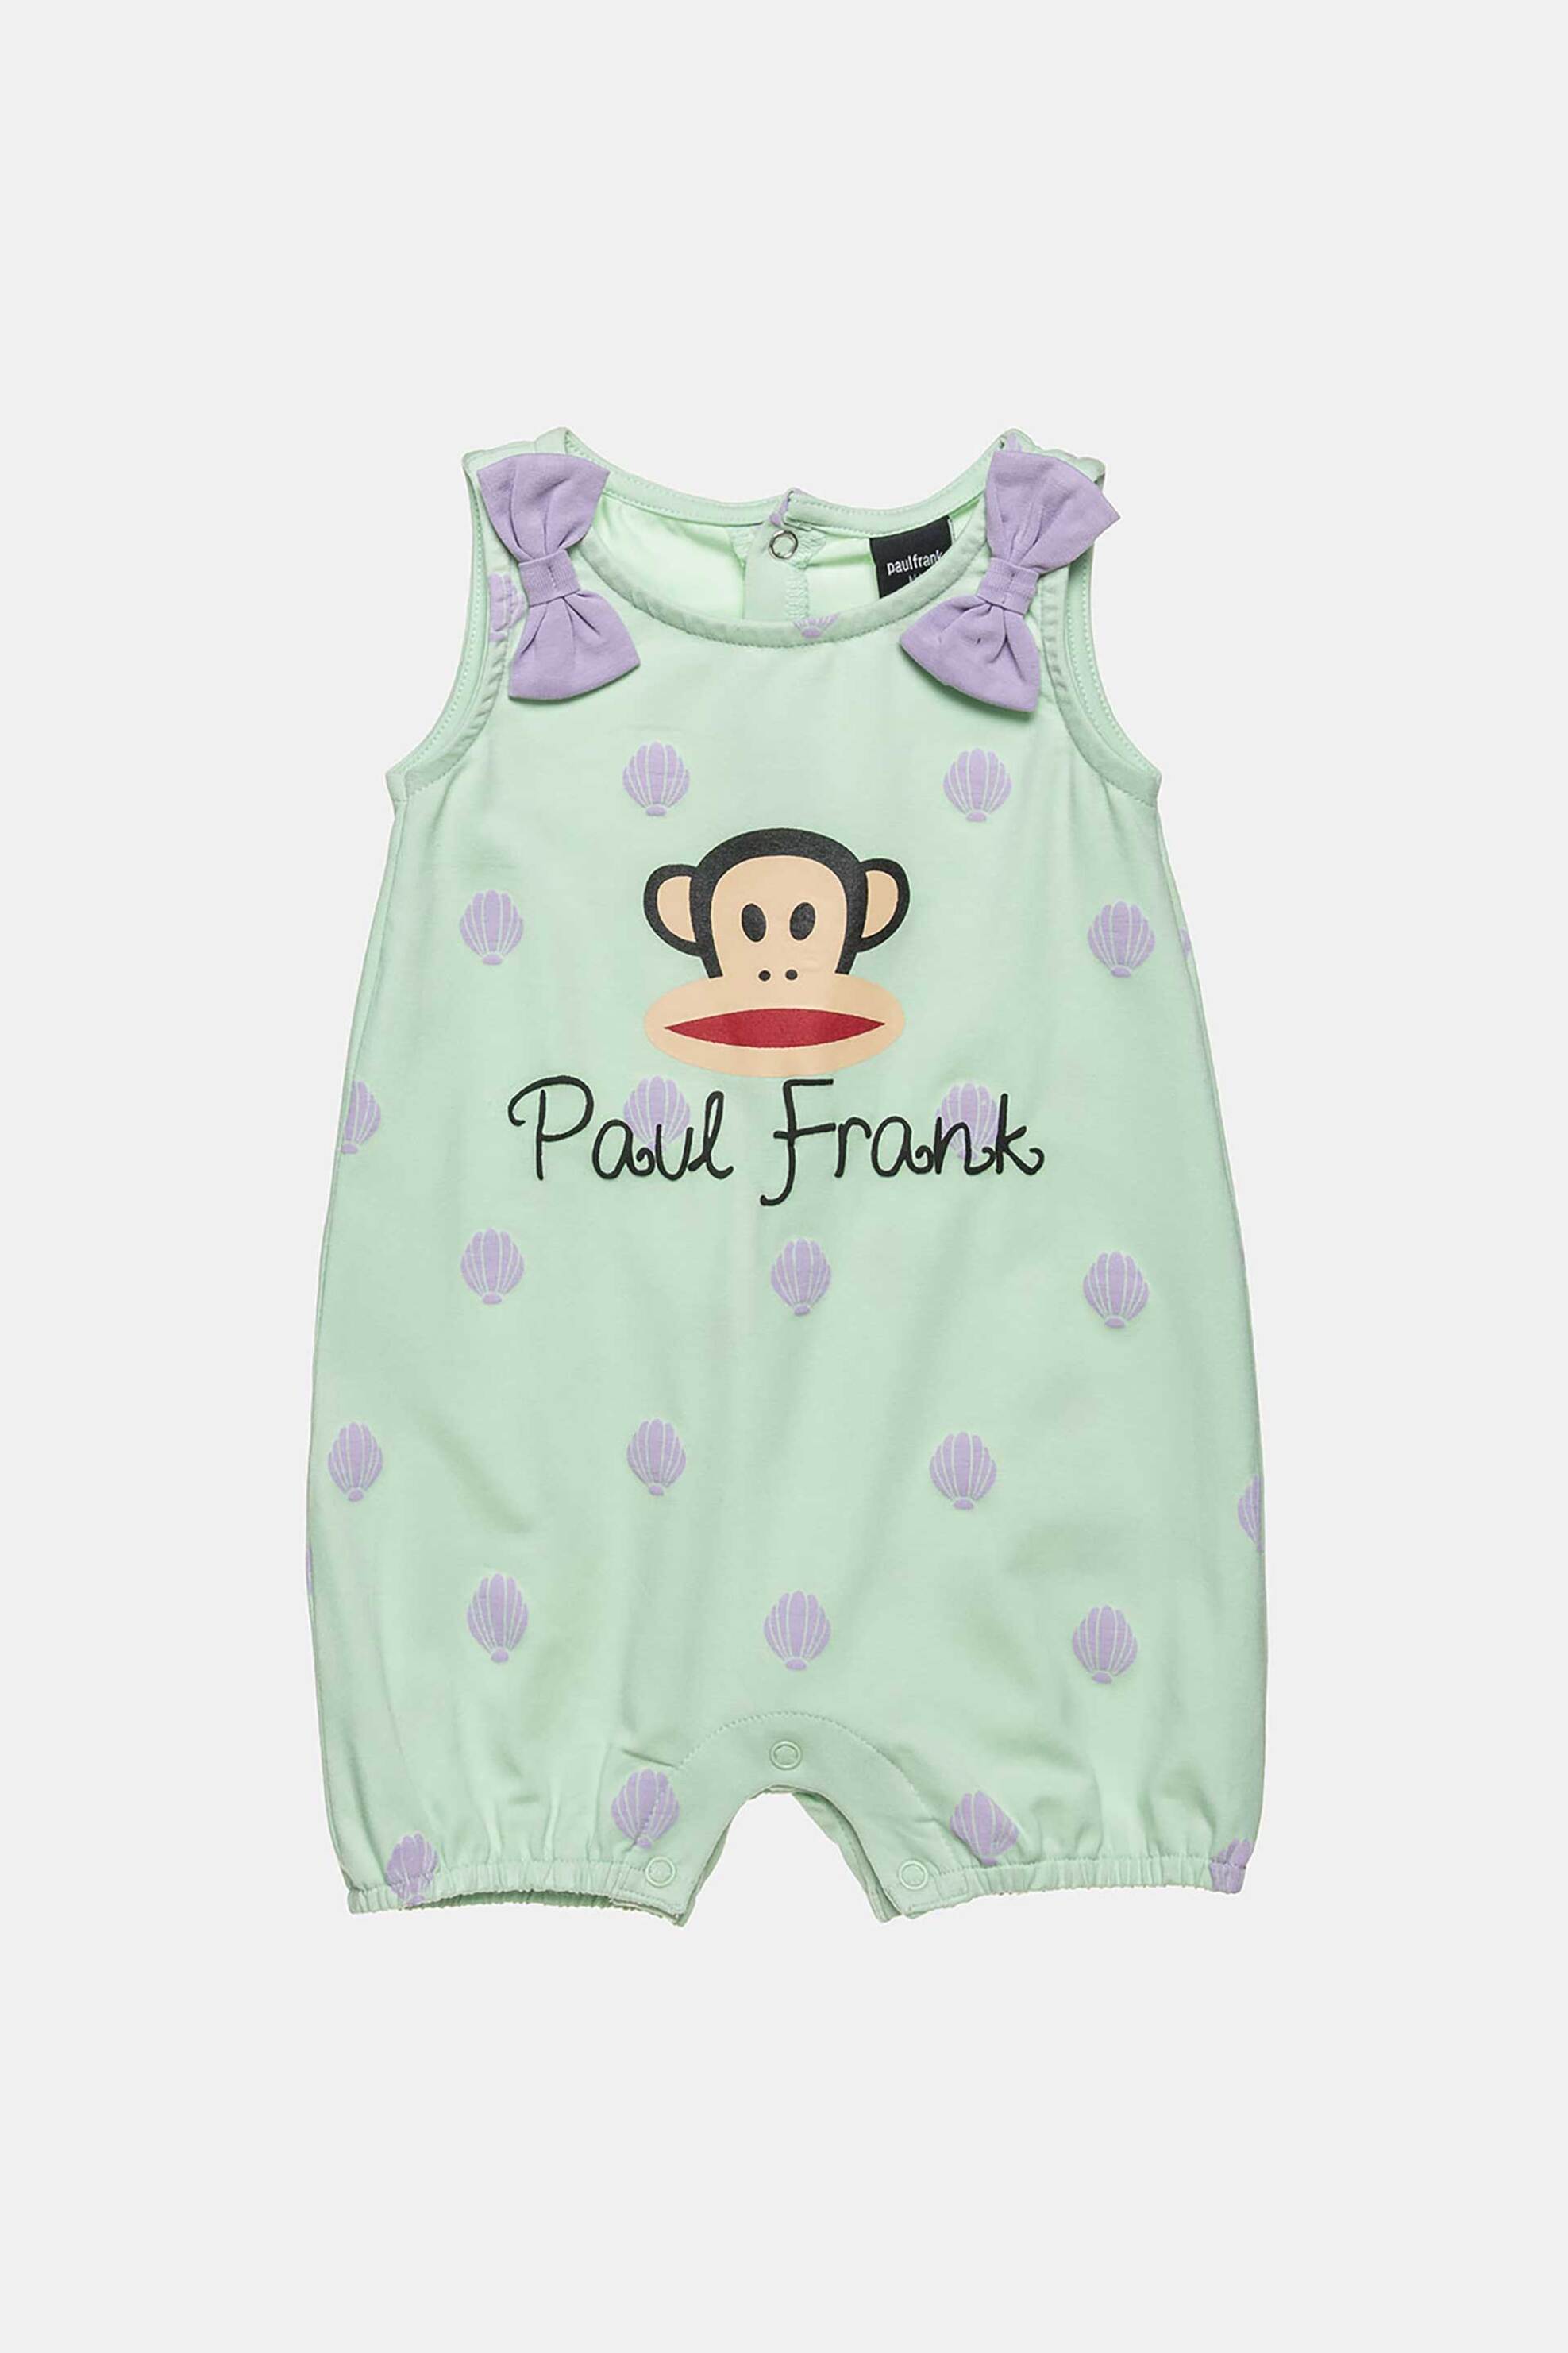 Παιδικά Ρούχα, Παπούτσια & Παιχνίδια > Βρεφικά για Κορίτσια > Βρεφικά Ρούχα για Κορίτσι > Βρεφικά Φορμάκια για Κορίτσια Alouette βρεφικό αμάνικο φορμάκι με λογότυπο και φιόγκους "Paul Frank" - 00580929 Βεραμάν